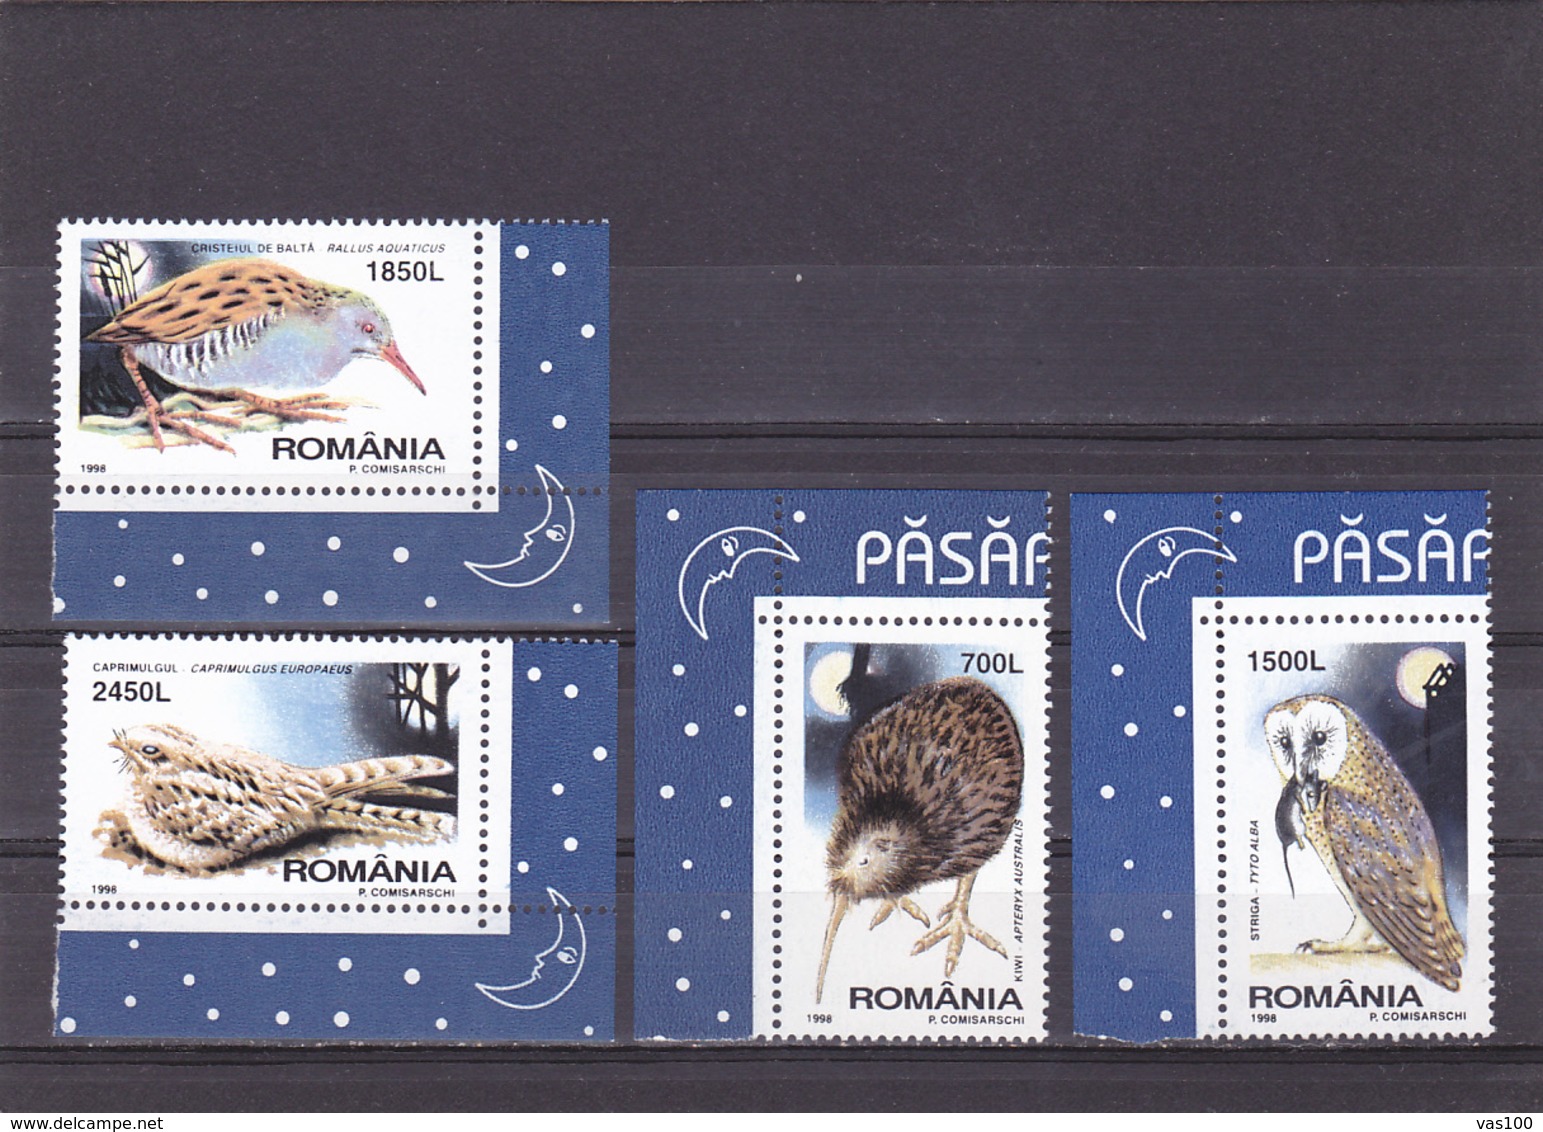 BIRDS KIWI,OWLS ETC.1998 MNH,ROMANIA. - Kiwis